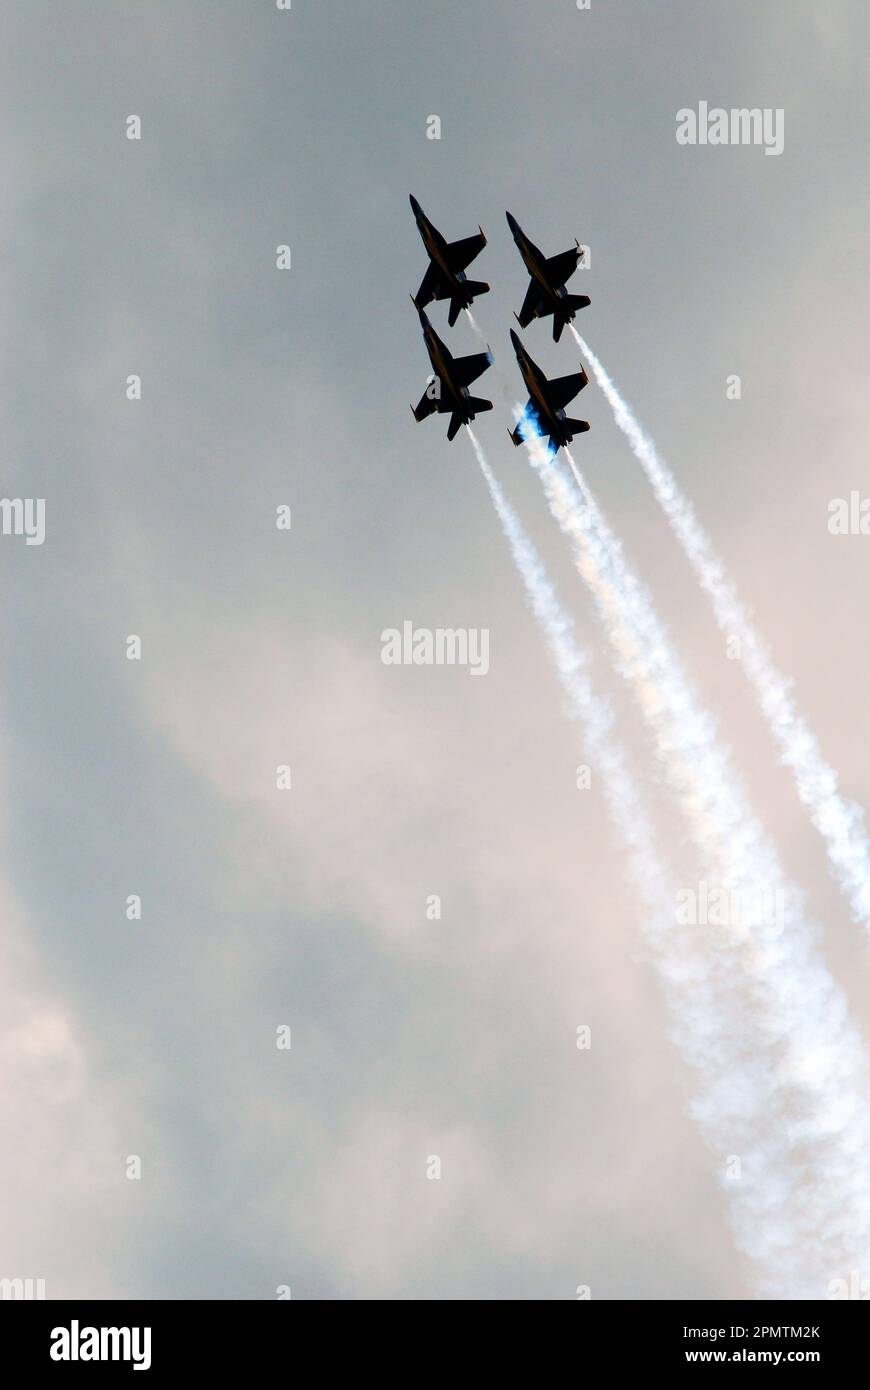 Eine Gruppe von vier F-14-Kampfflugzeugen fliegt in einer Diamantenformation über dem Himmel von Wantagh New York Stockfoto